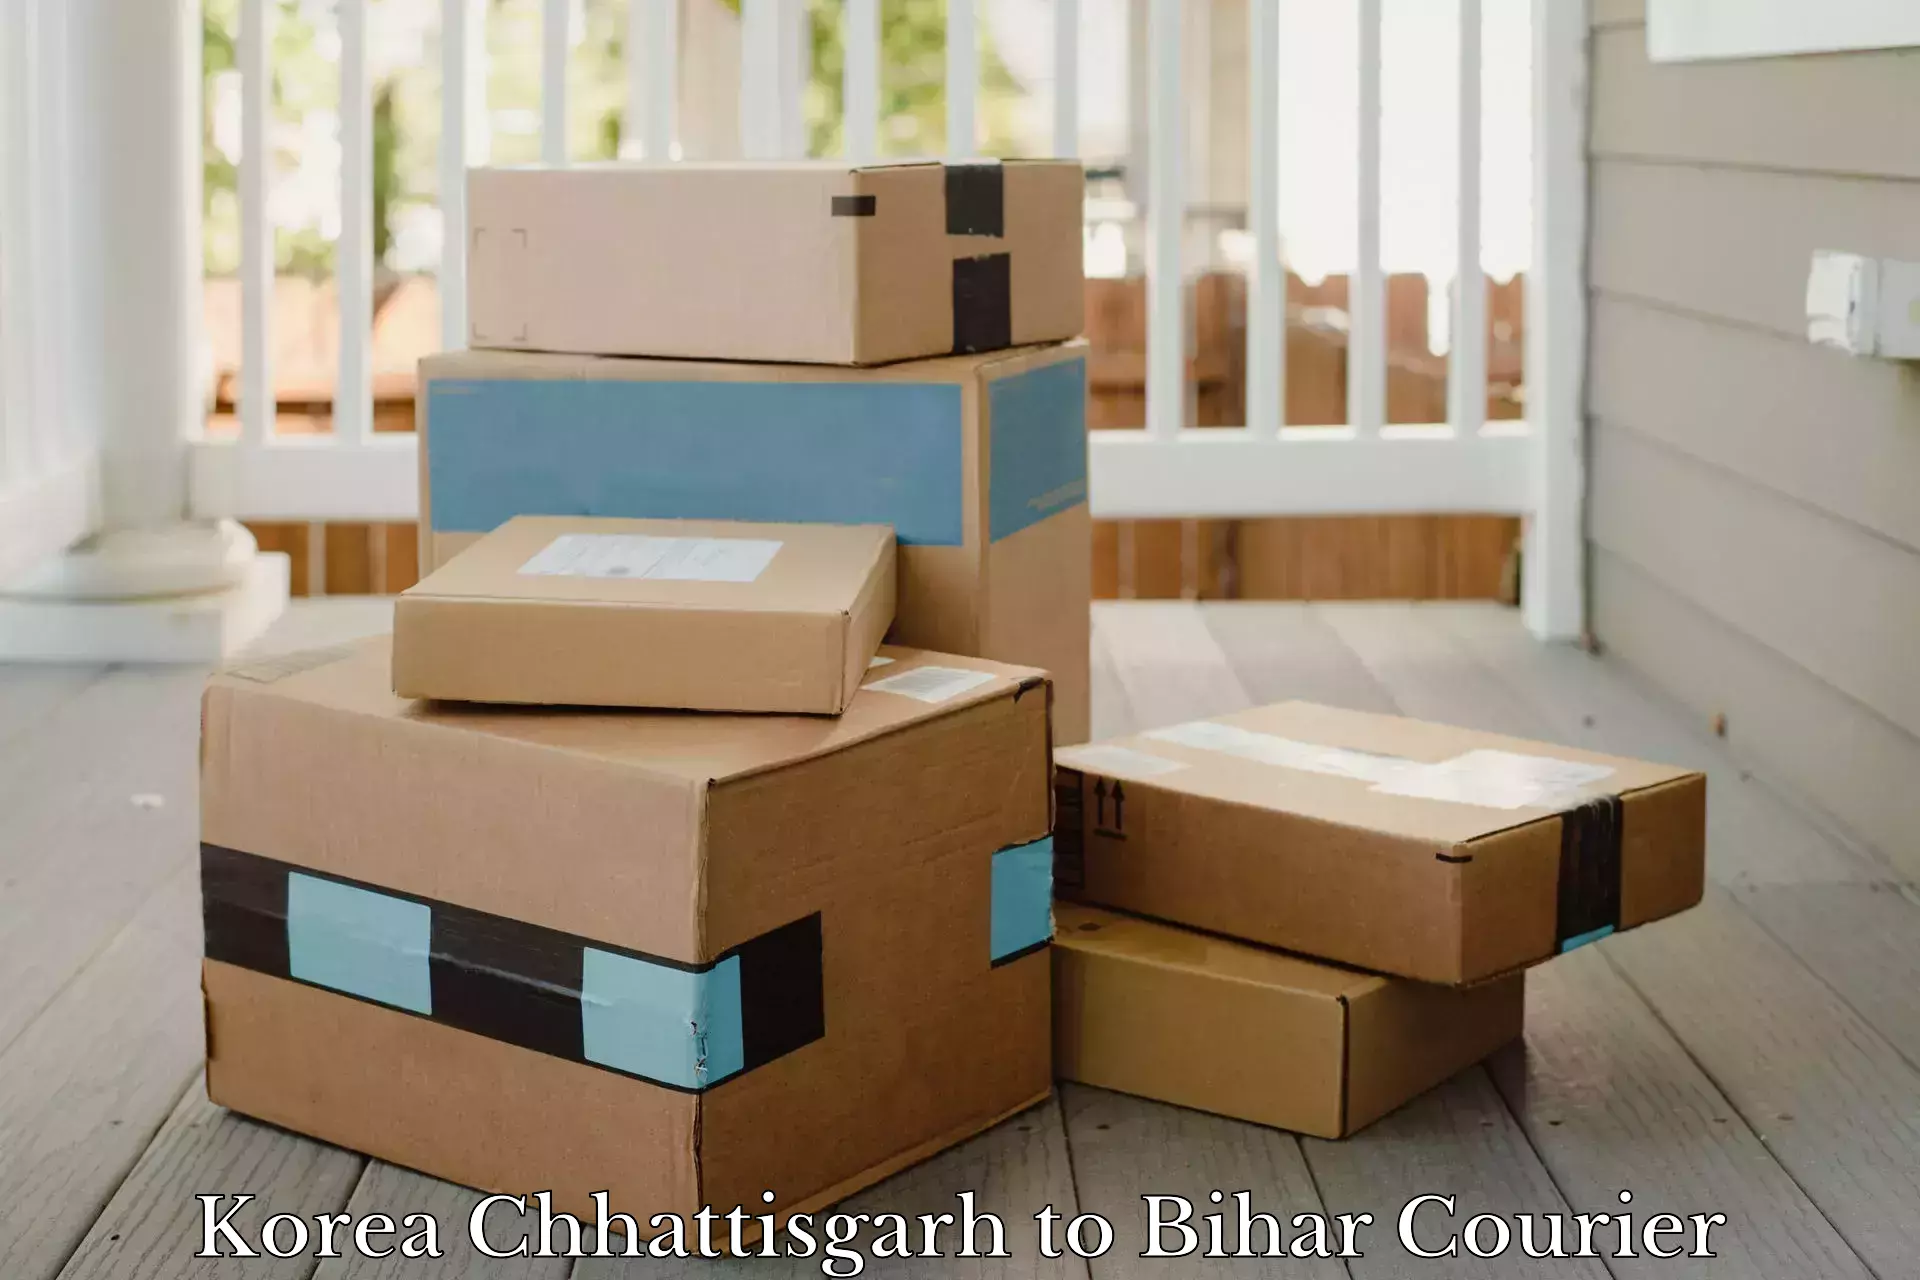 24-hour courier service Korea Chhattisgarh to Mashrakh